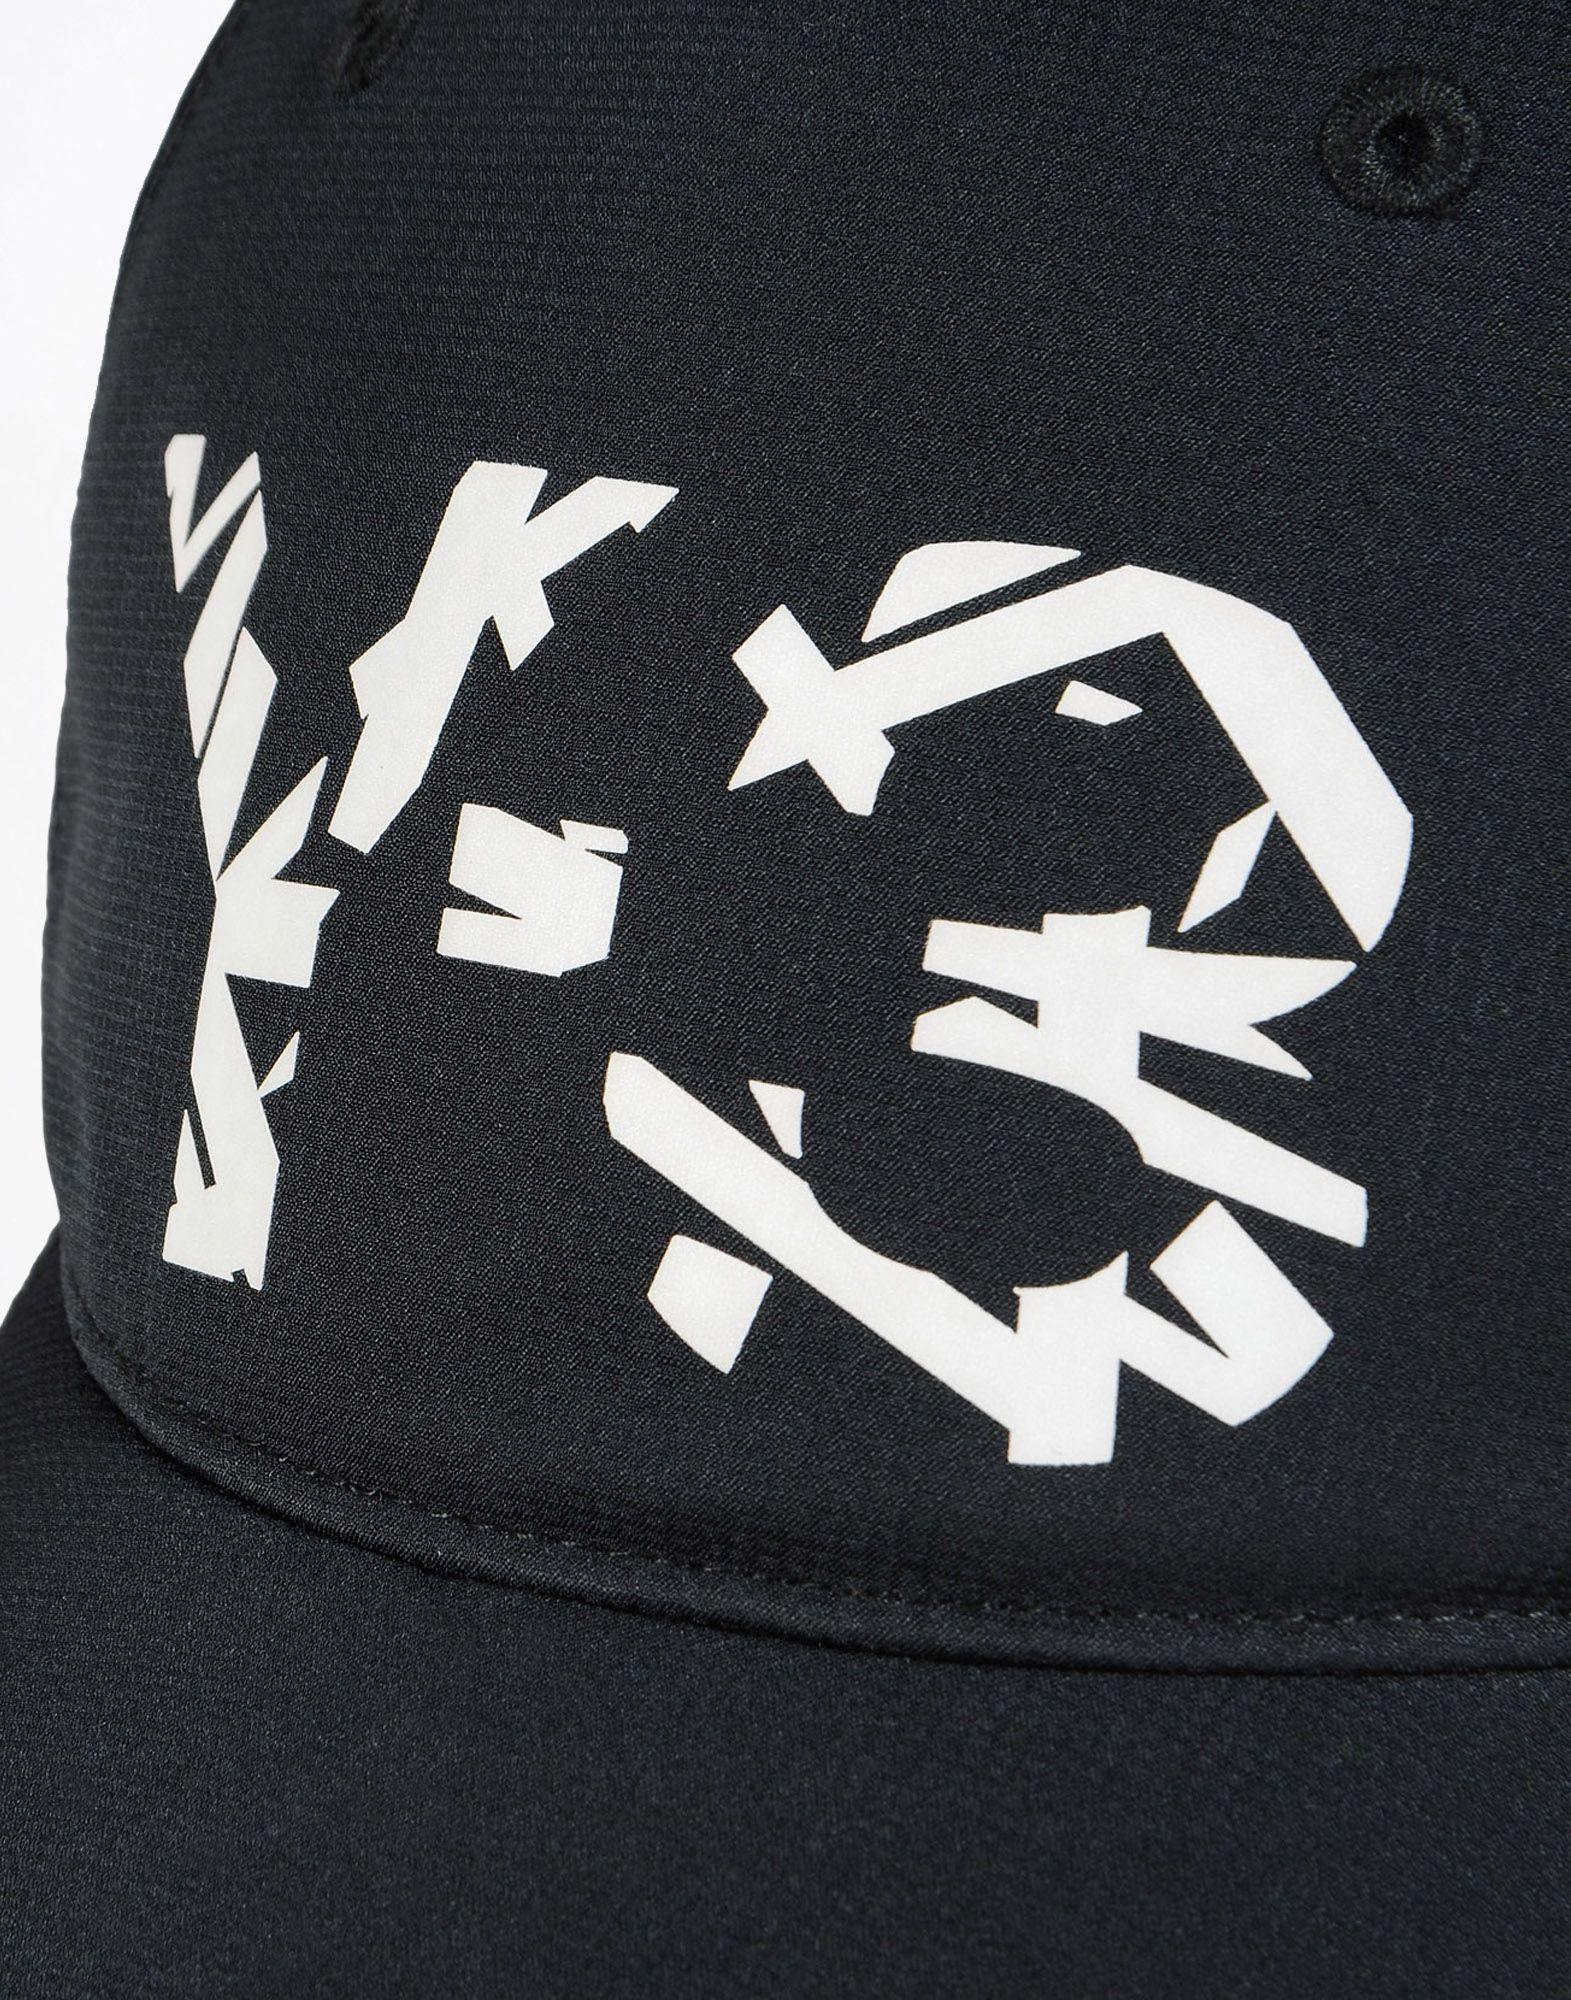 Y-3 Logo - Y 3 LOGO CAP Caps | Adidas Y-3 Official Site